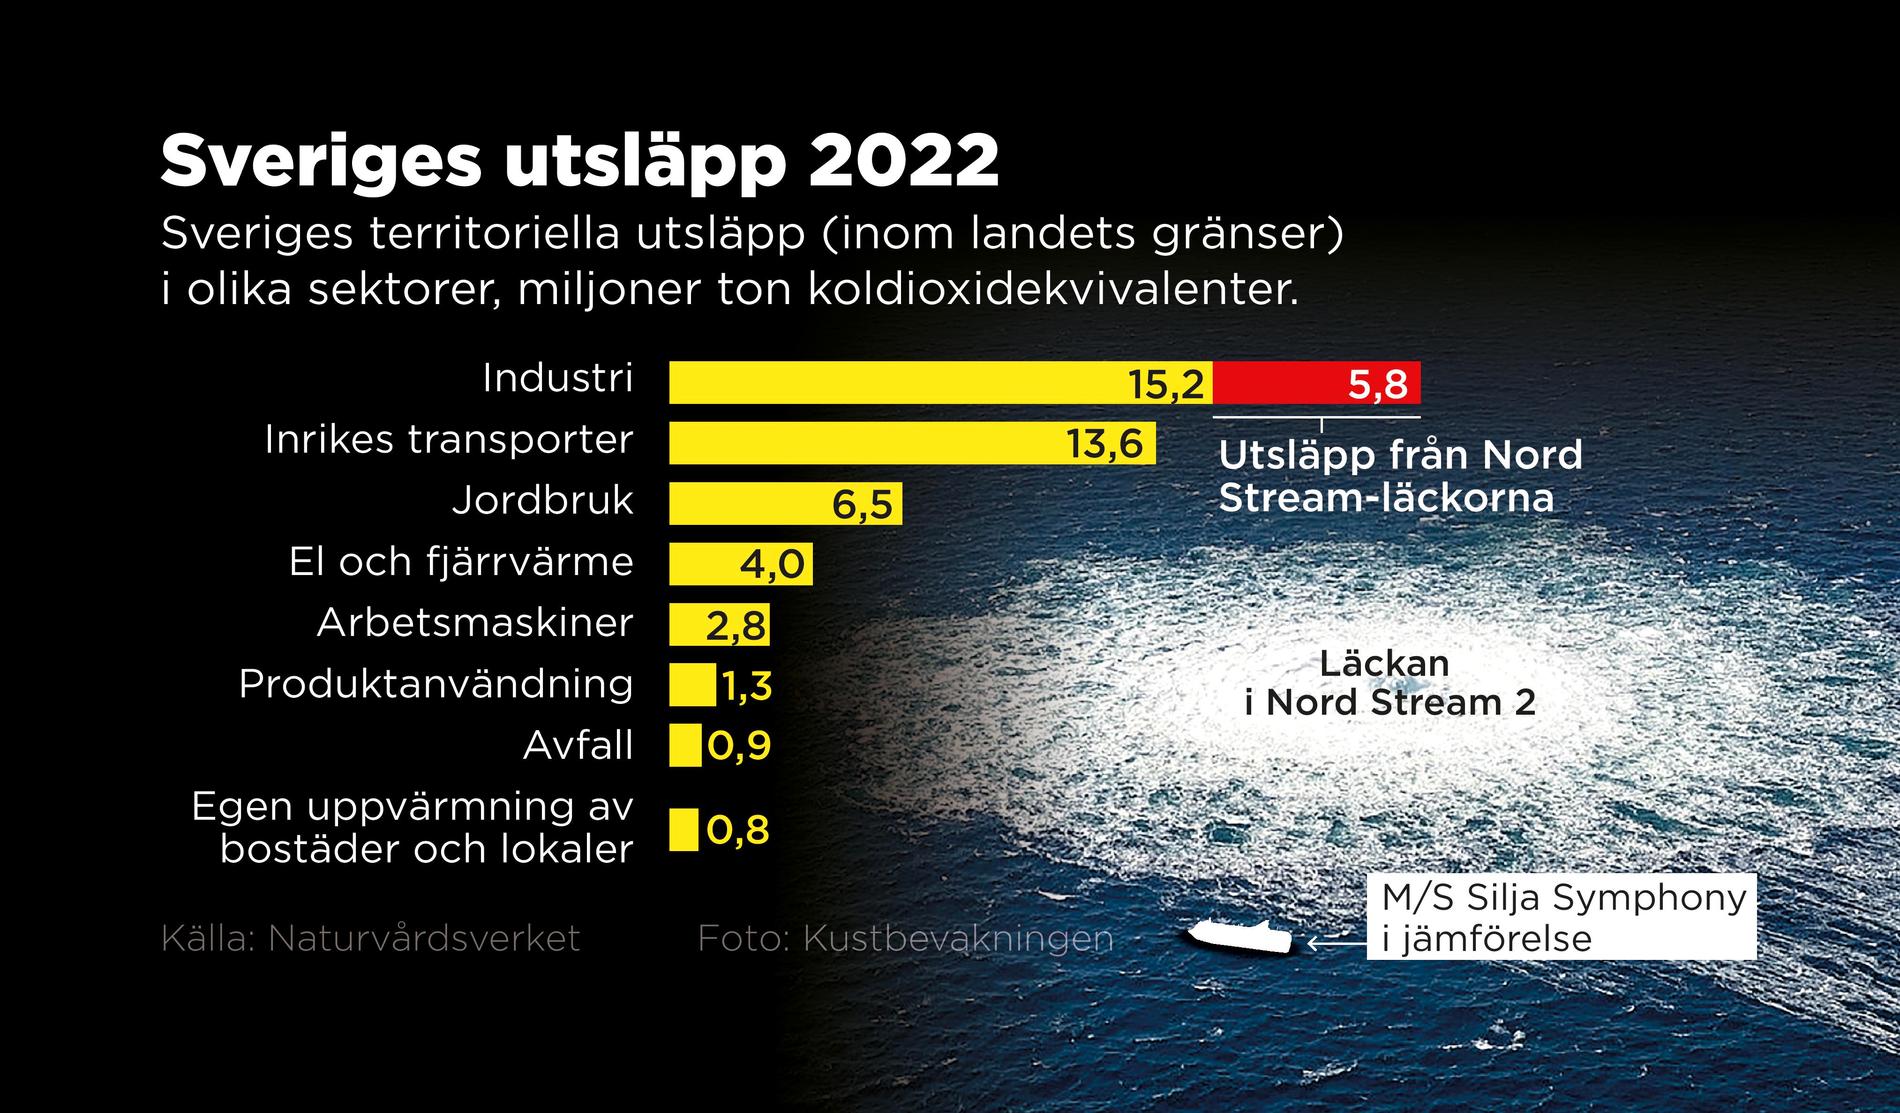 Sveriges territoriella utsläpp uppgick till 45,2 miljoner ton koldioxidekvivalenter. Från läckan i Nord Stream 1 och 2 tillkommer ytterligare 5,8 miljoner ton koldioxidekvivalenter.